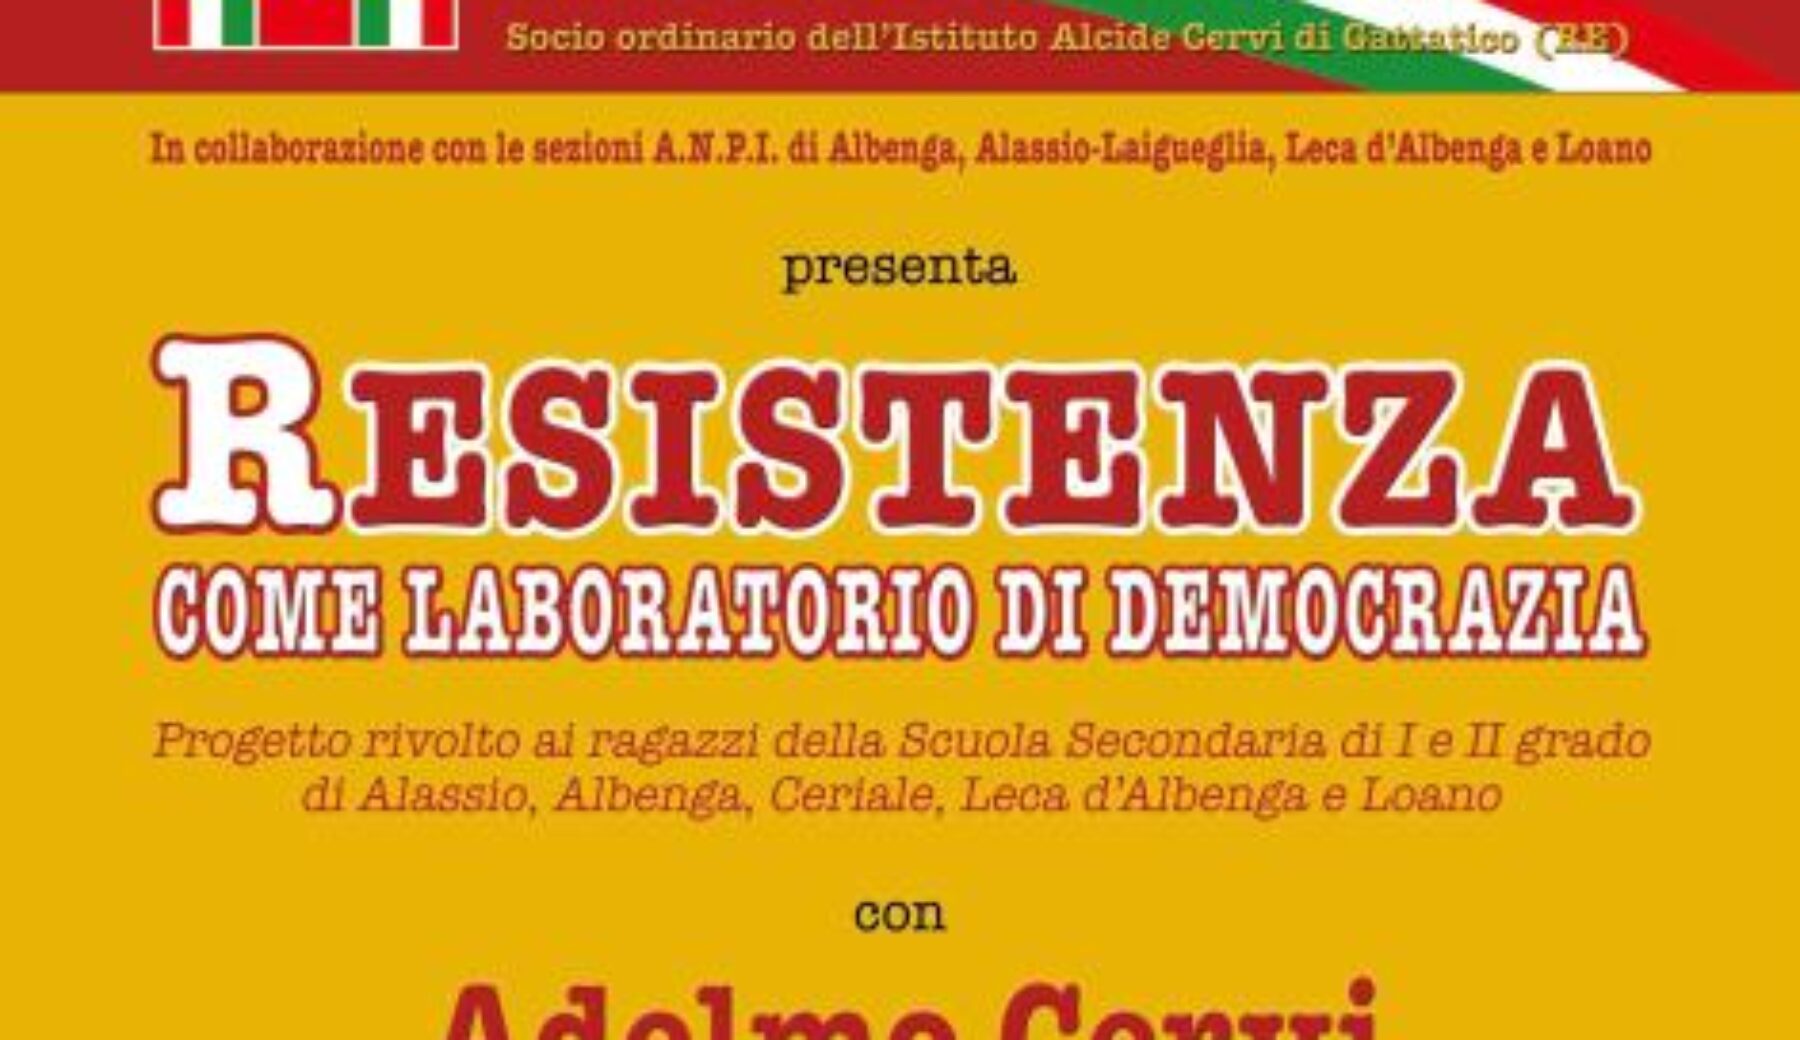 L’A.N.P.I. di Ceriale presenta “Resistenza come laboratorio di democrazia”